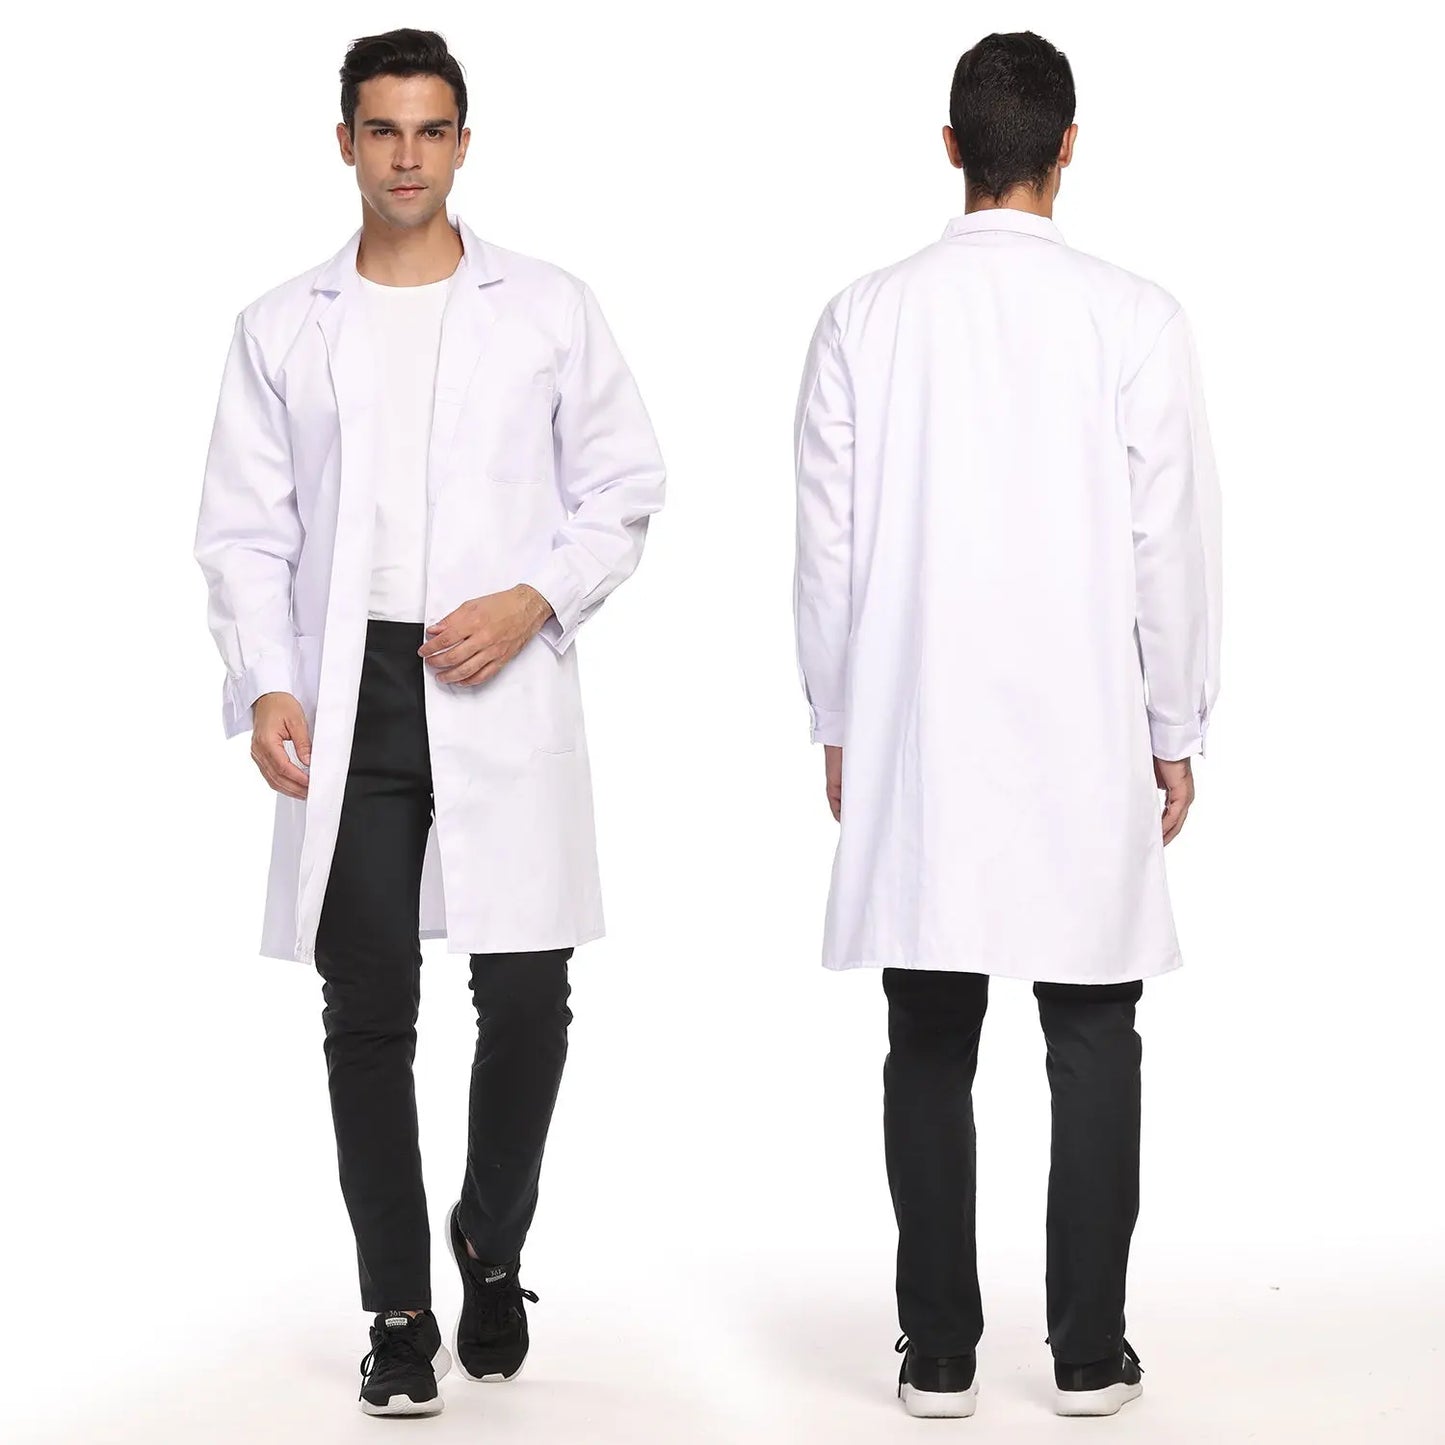 Unisex Lab Coat, Professional Full Length 3 Pocket Long Sleeve Laboratory Coat - StonyLab Lab Protections 